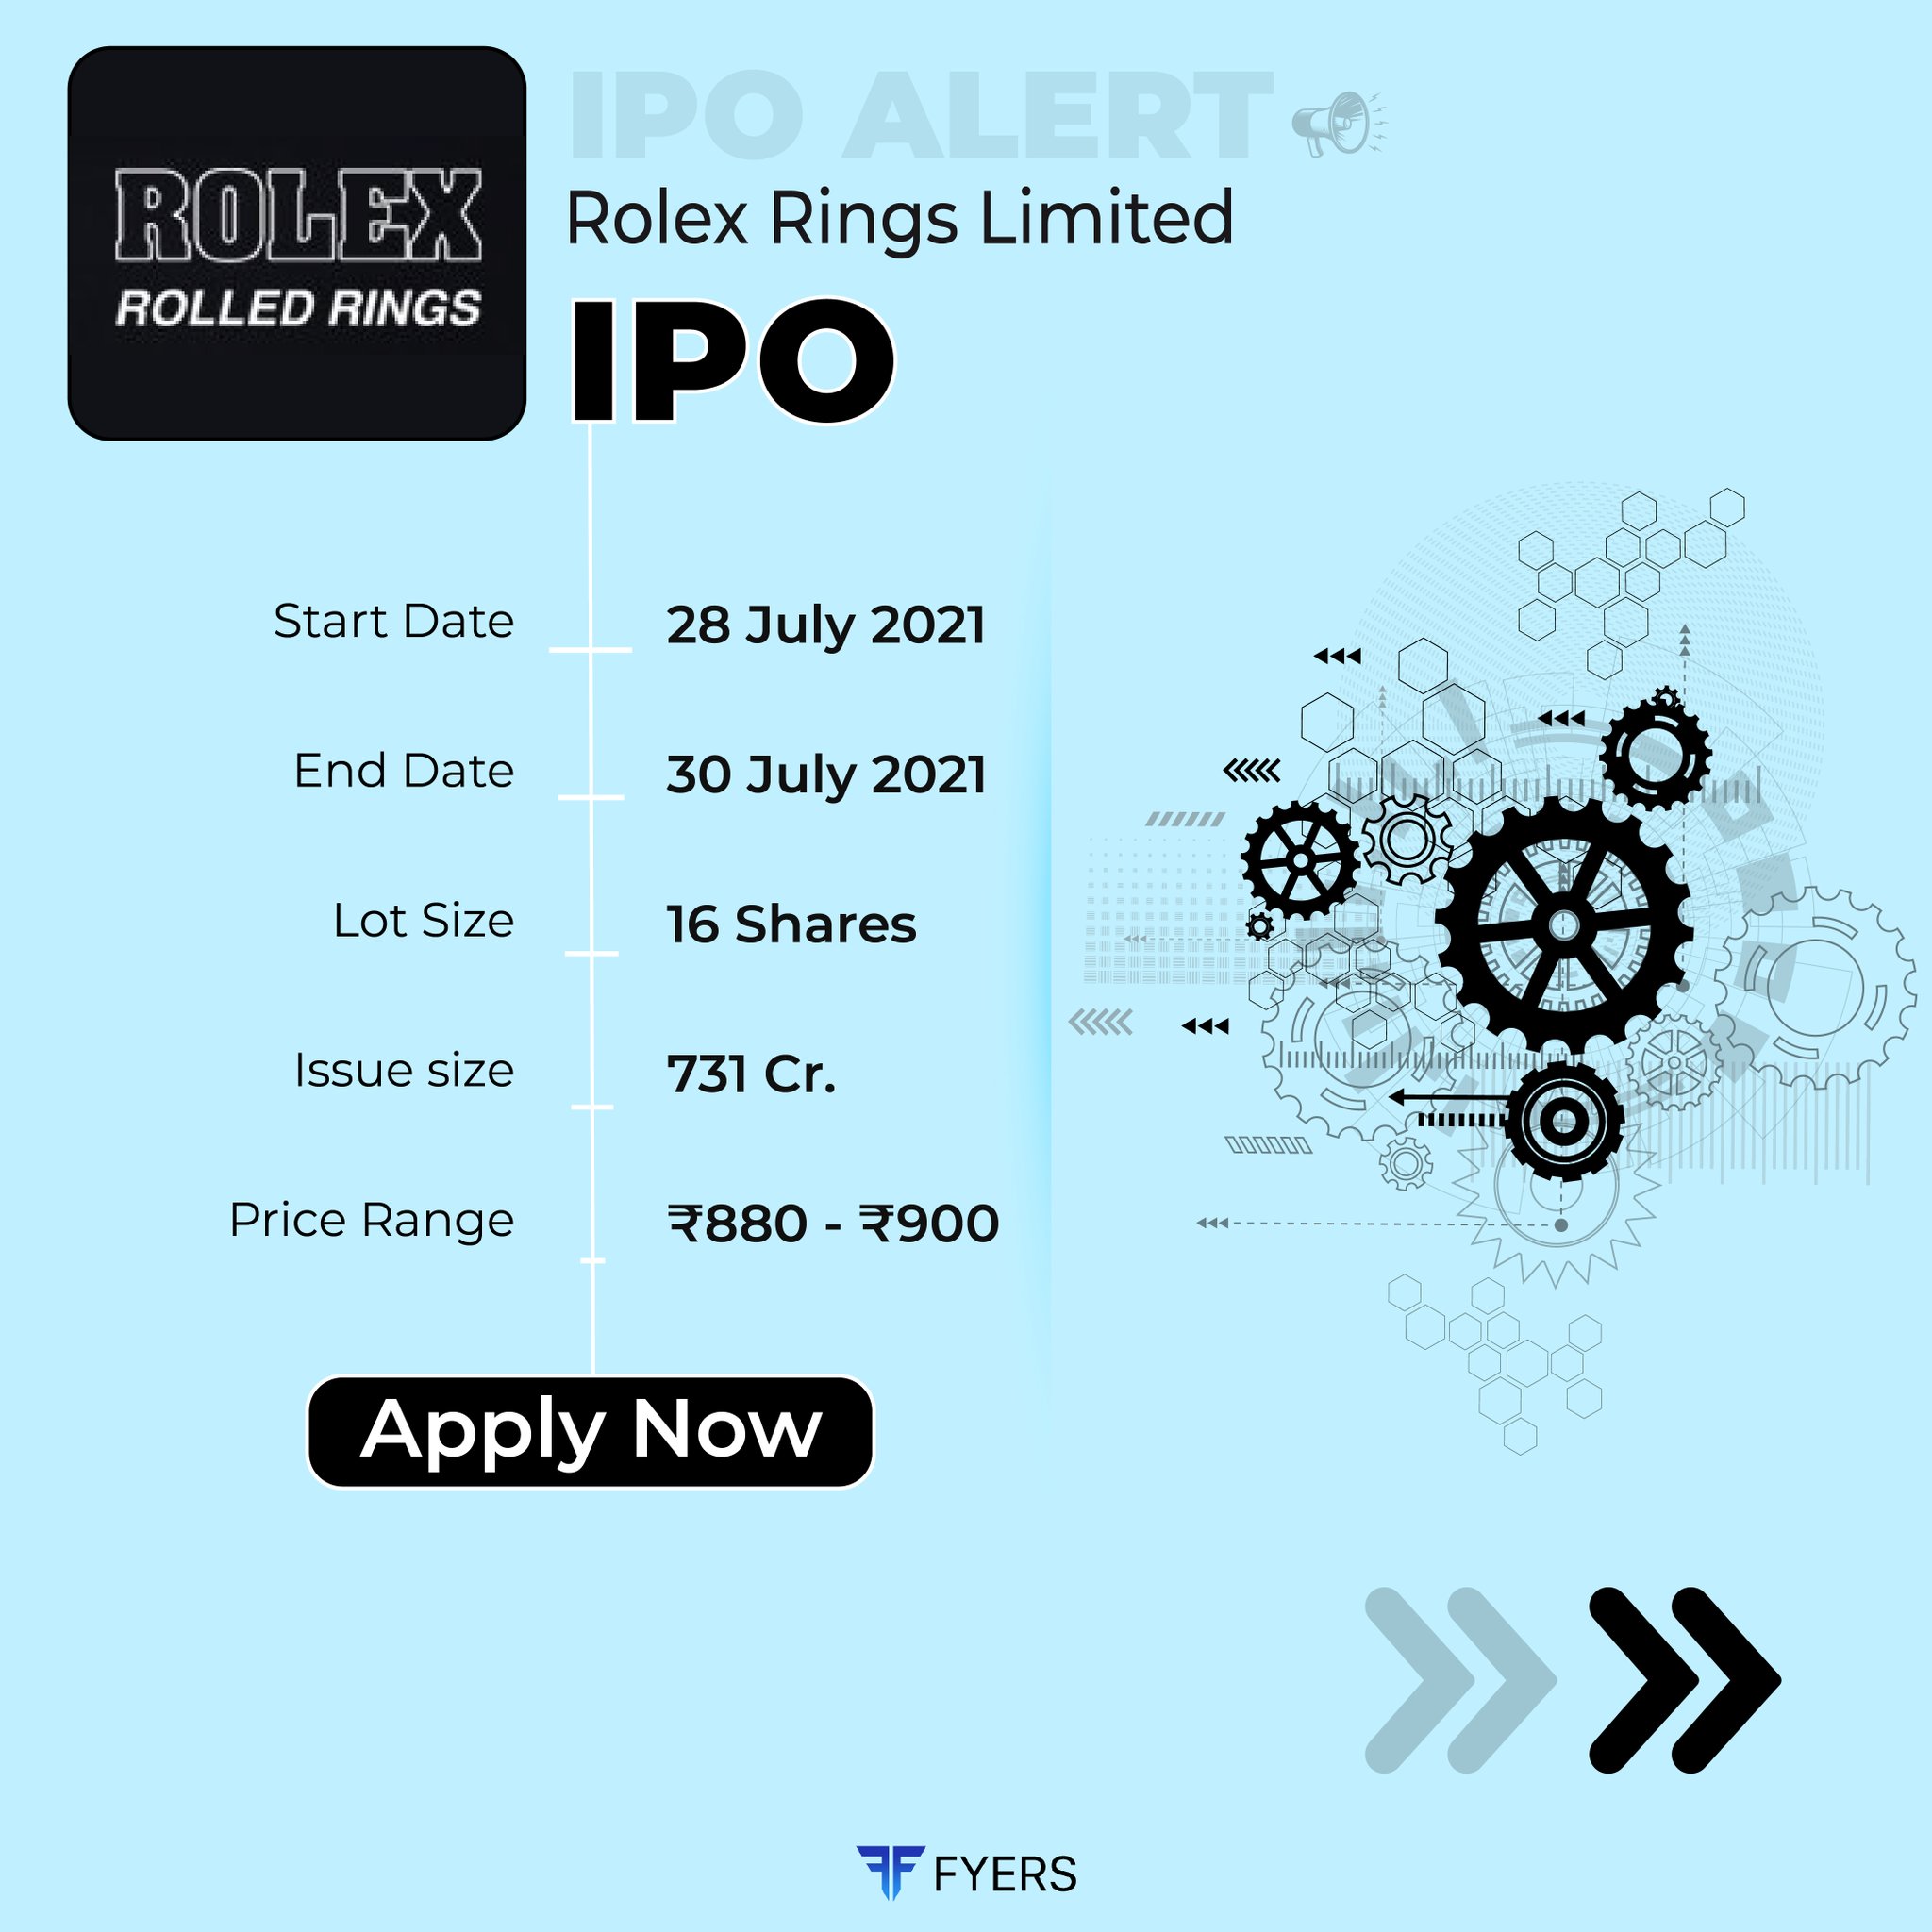 Rolex Rings Share Price | रोलेक्स रिंग्स कंपनीच्या IPO मध्ये  गुंतवणूकदारांची मोठी कमाई, आता नवीन टार्गेट प्राईस जाहीर | Rolex Rings  Share Price | रोलेक्स रिंग्स ...